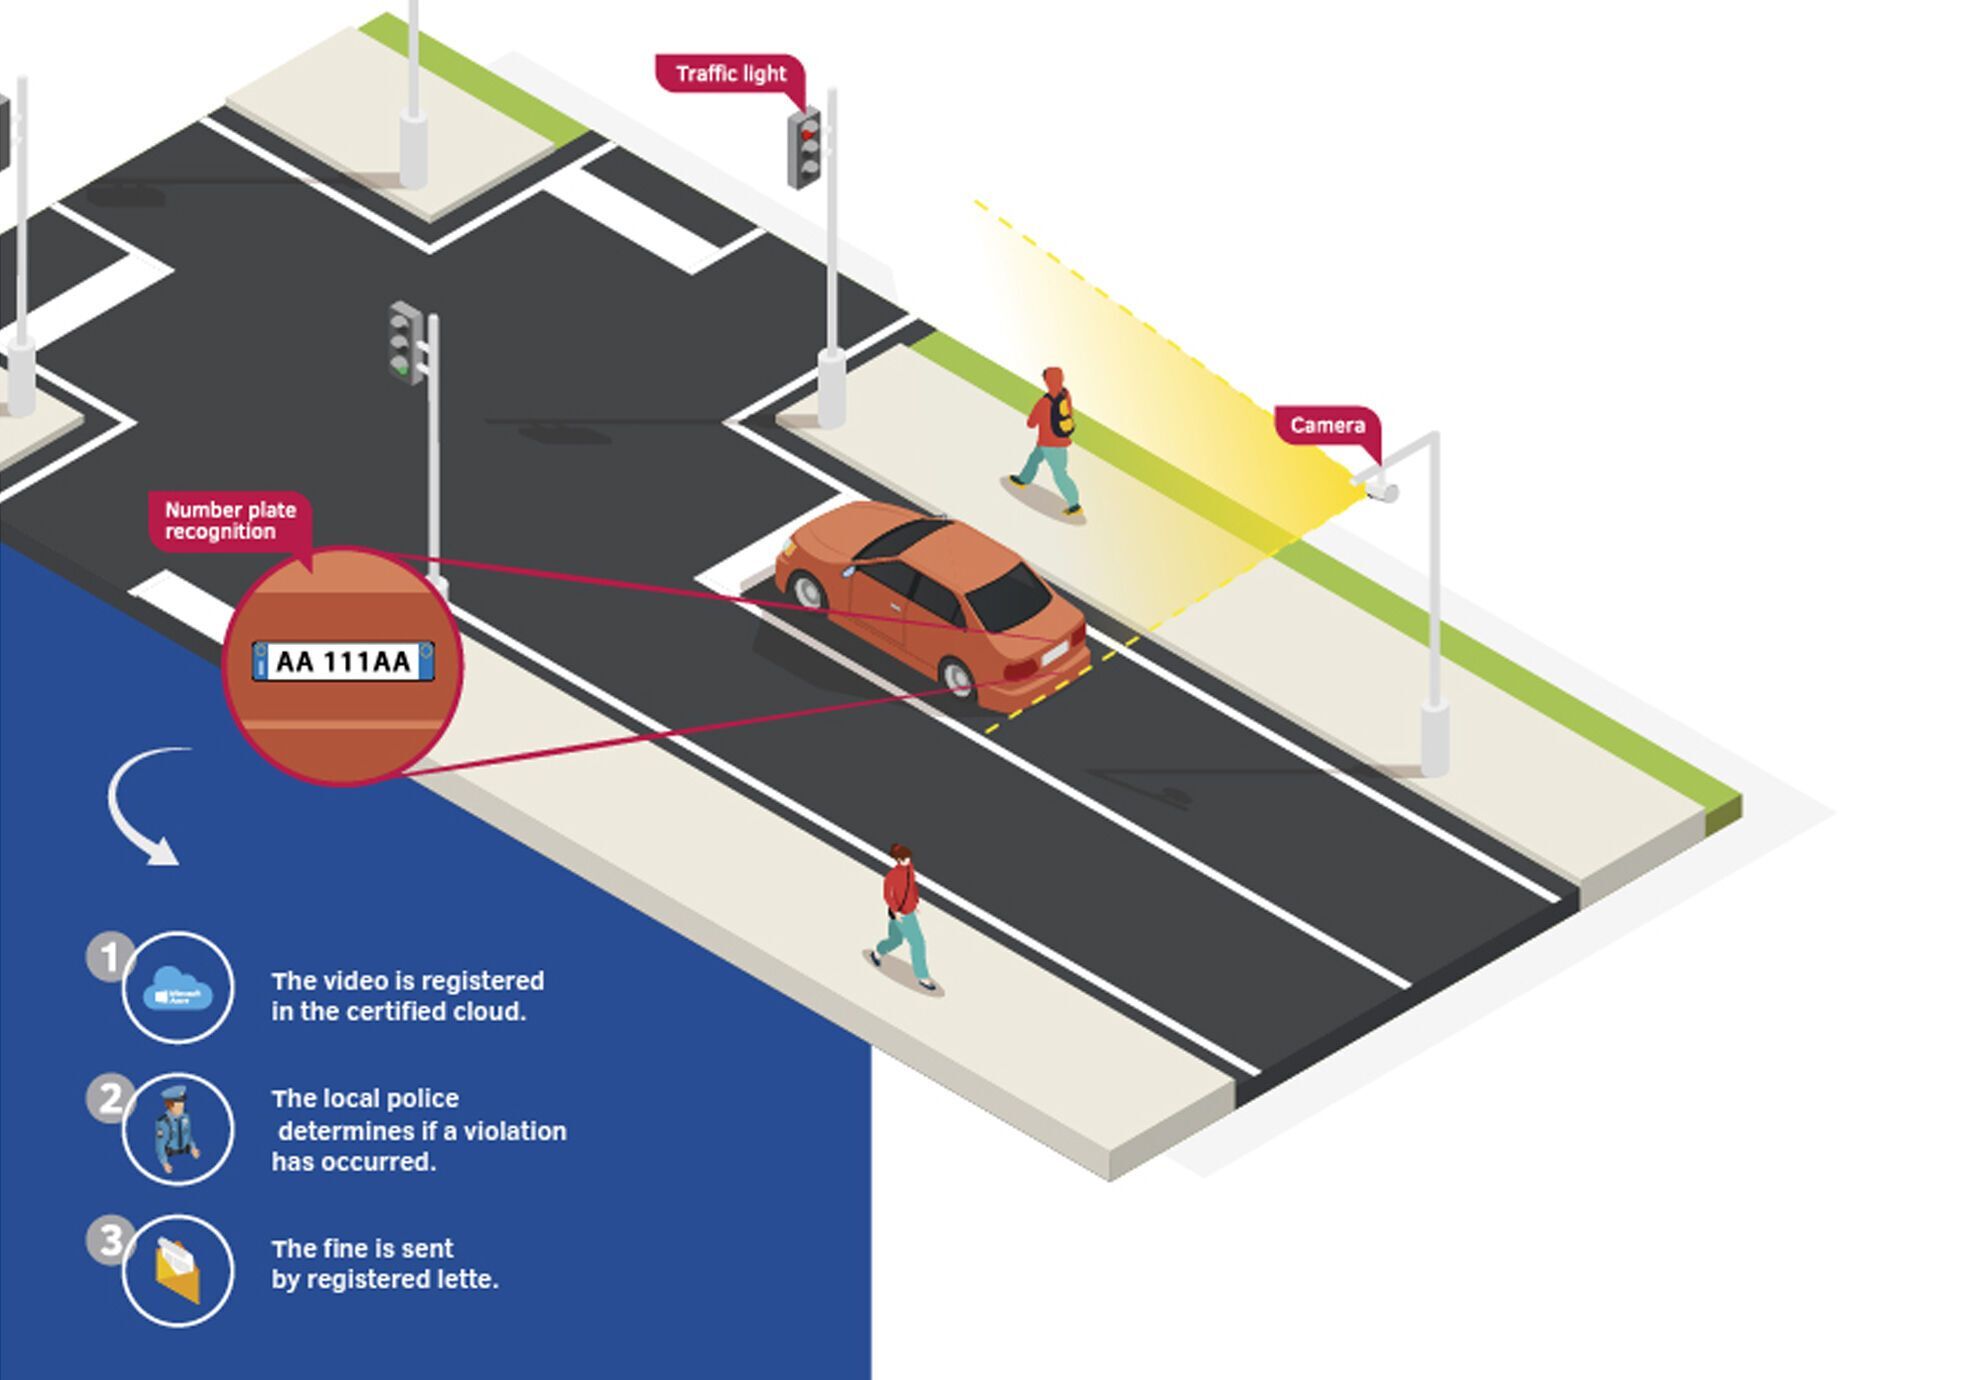 Система контролює ділянку дороги зі світлофором та розміткою, а також здатна розпізнавати номерні знаки авто